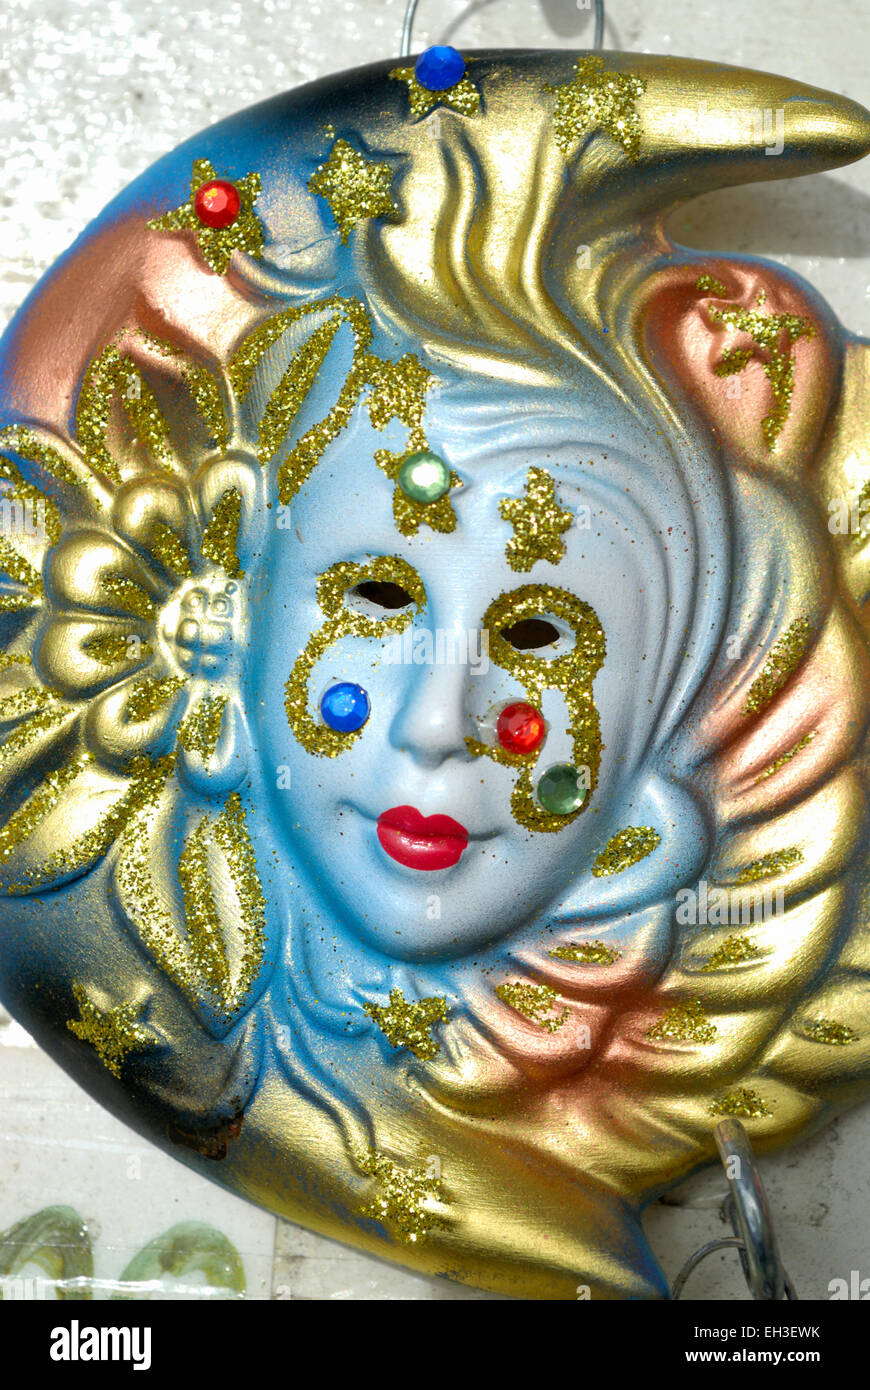 Masque de carnaval souvenir, porcelaine, Venise, Italie Banque D'Images